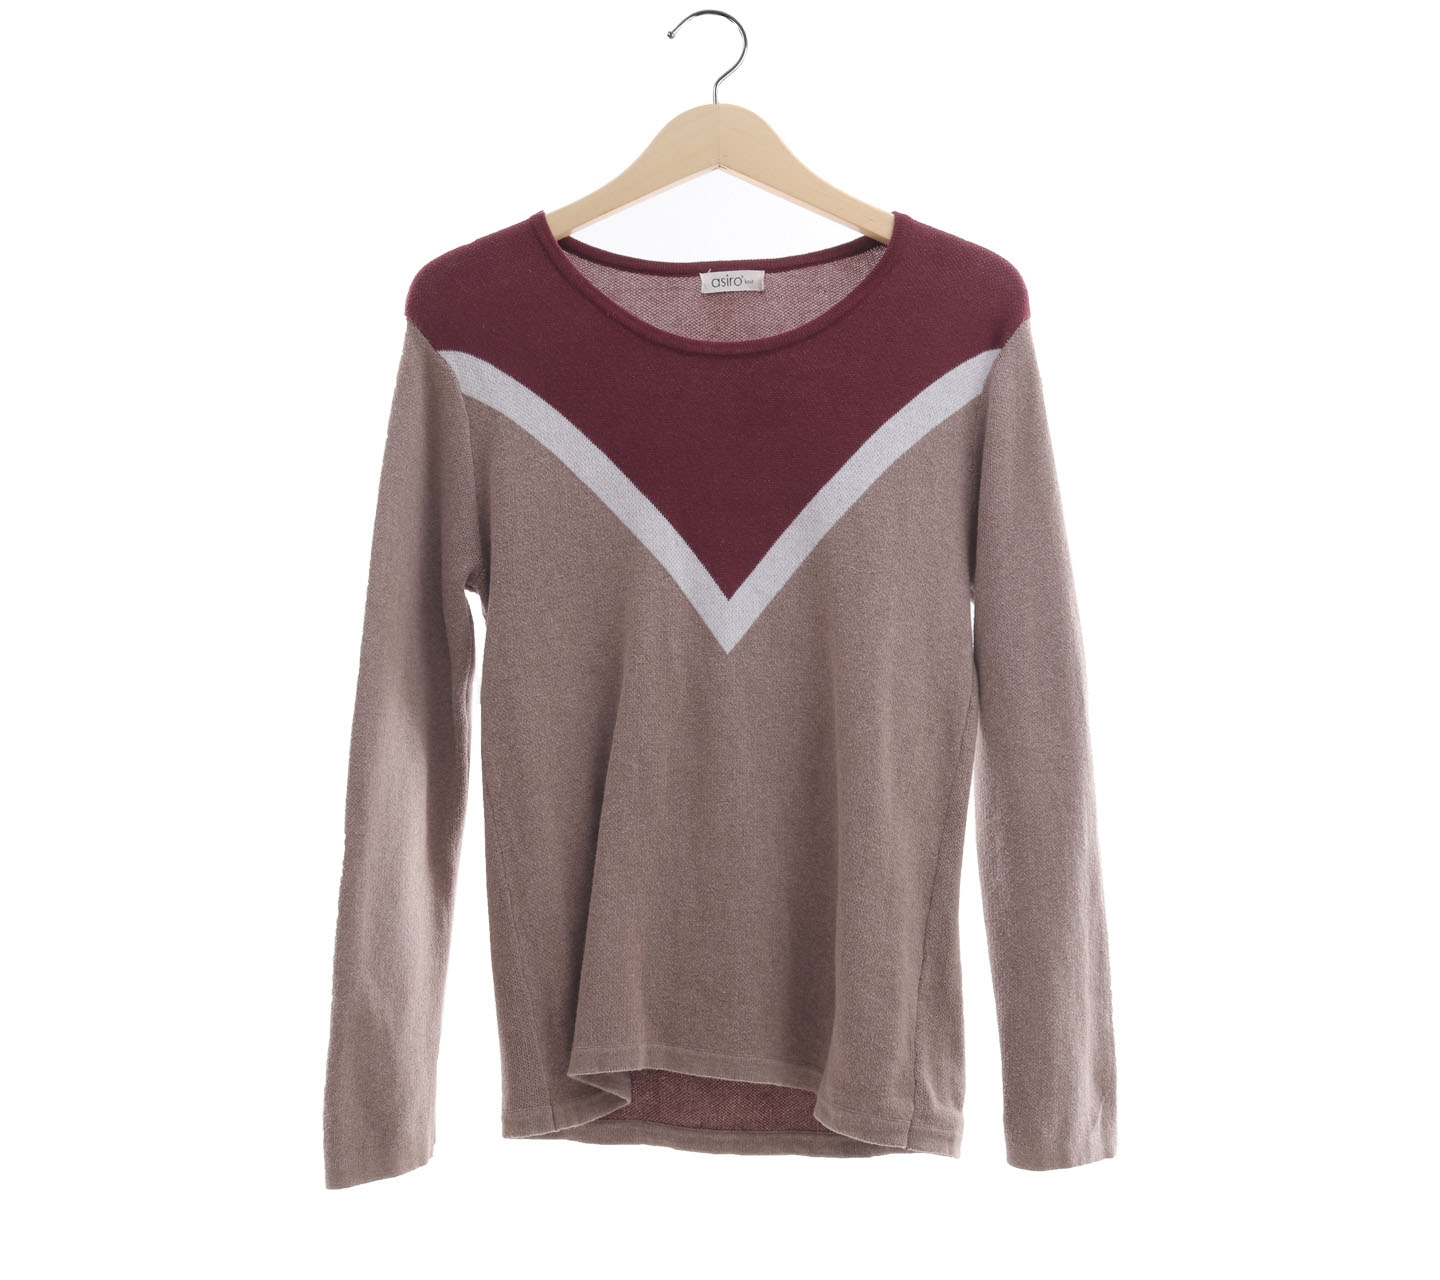 Asiro Brown & Maroon Sweater